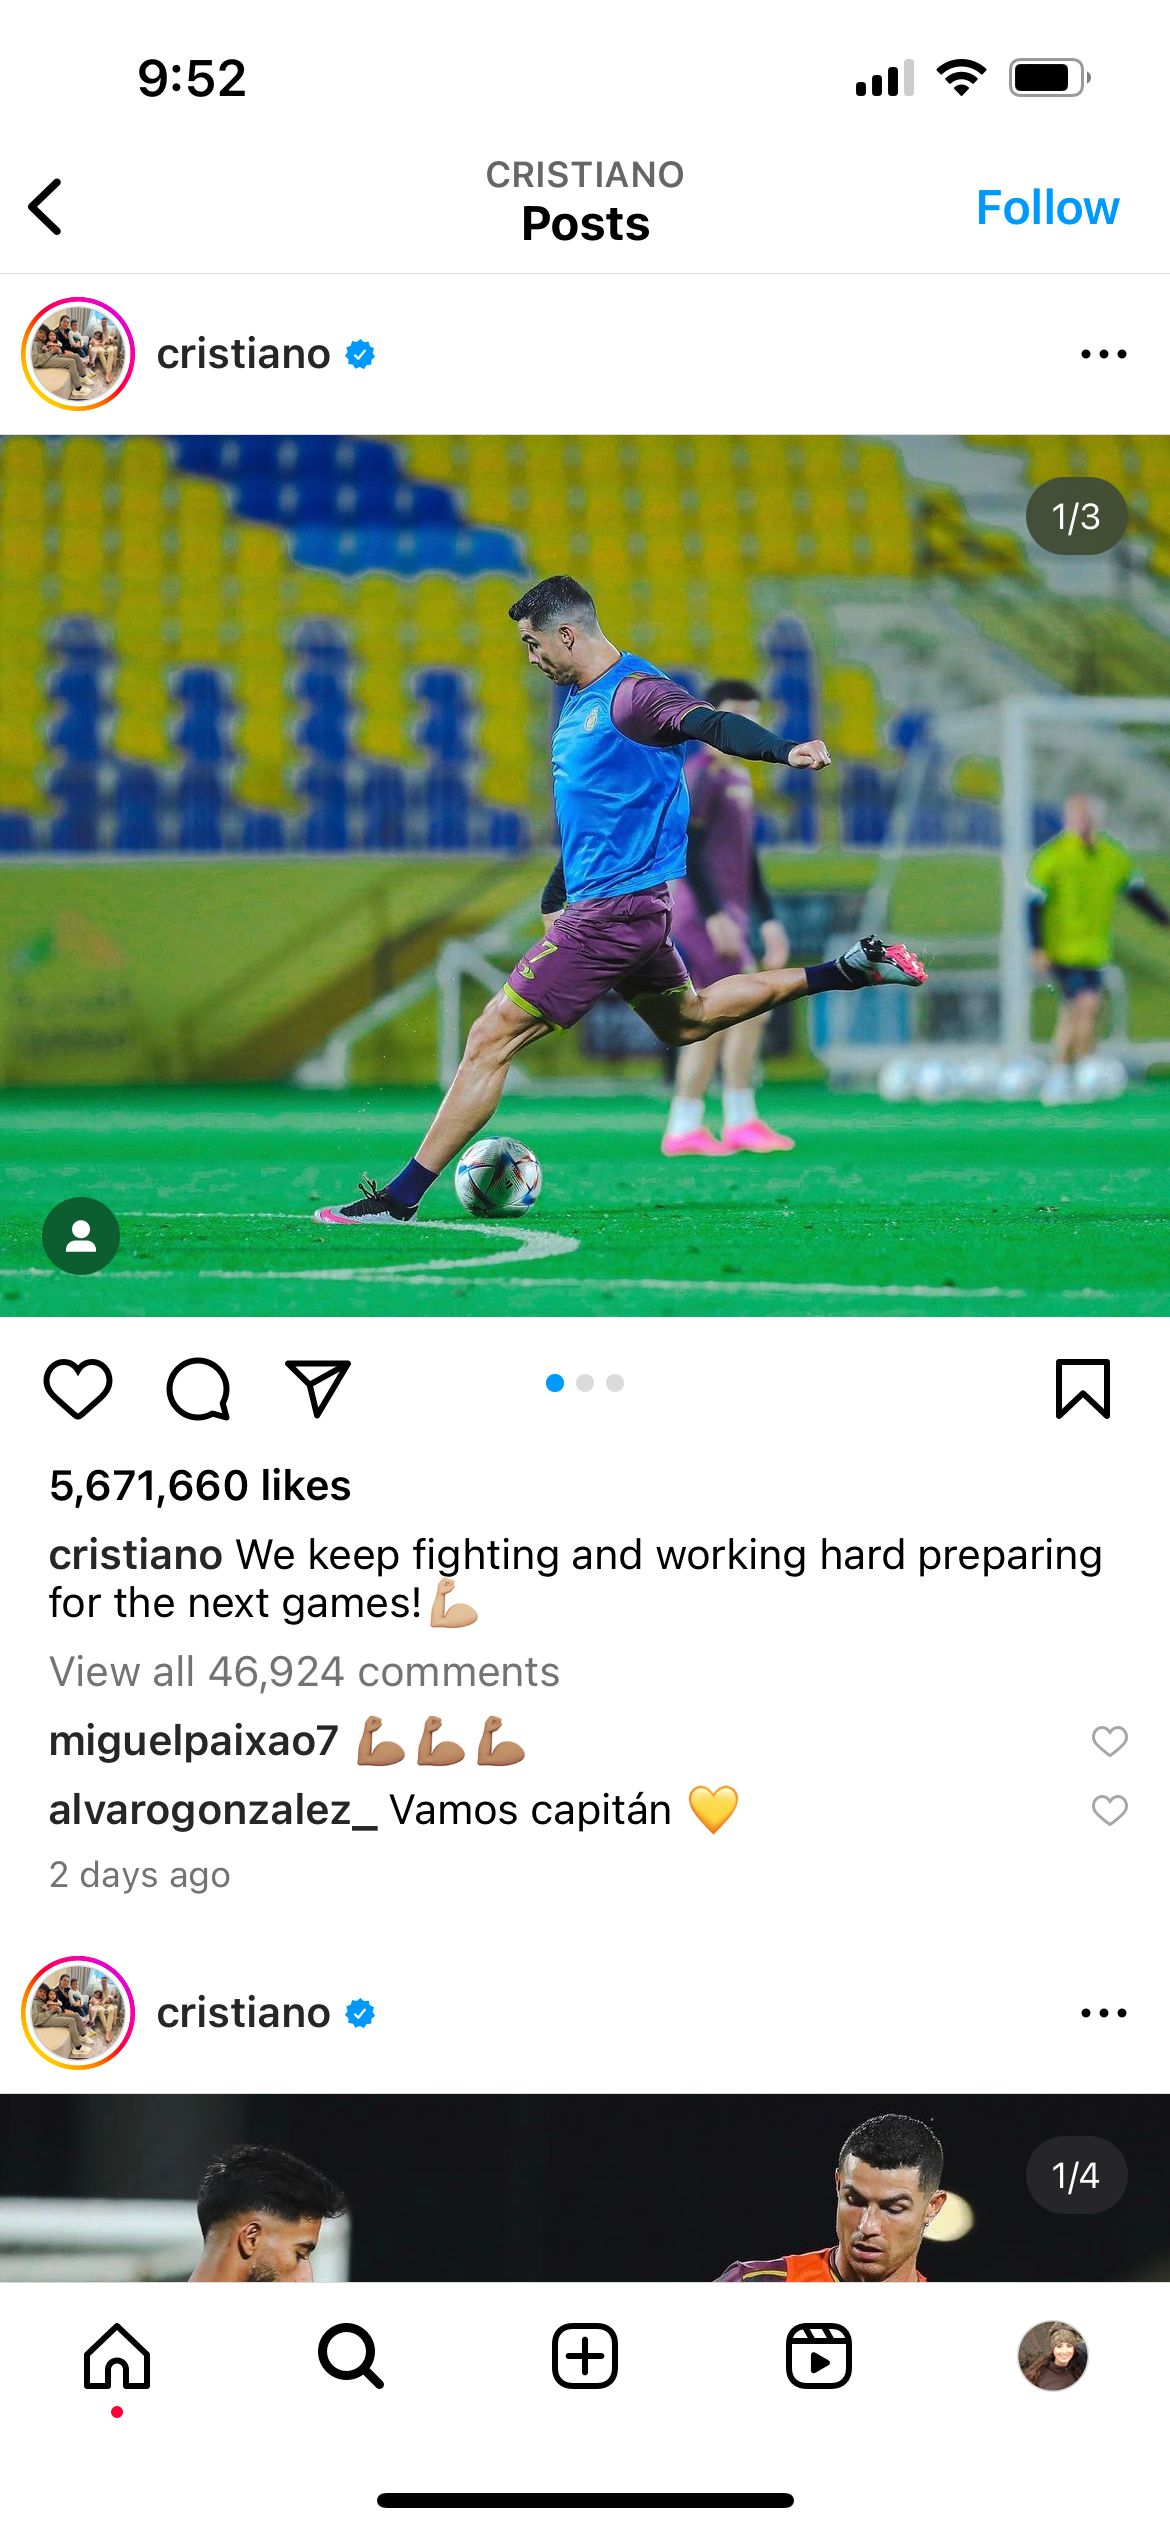 Captura de tela do jogador Cristiano Ronaldo prestes a chutar uma bola de futebol. A legenda diz: “We keep fighting and working hard preparing for the next games!”